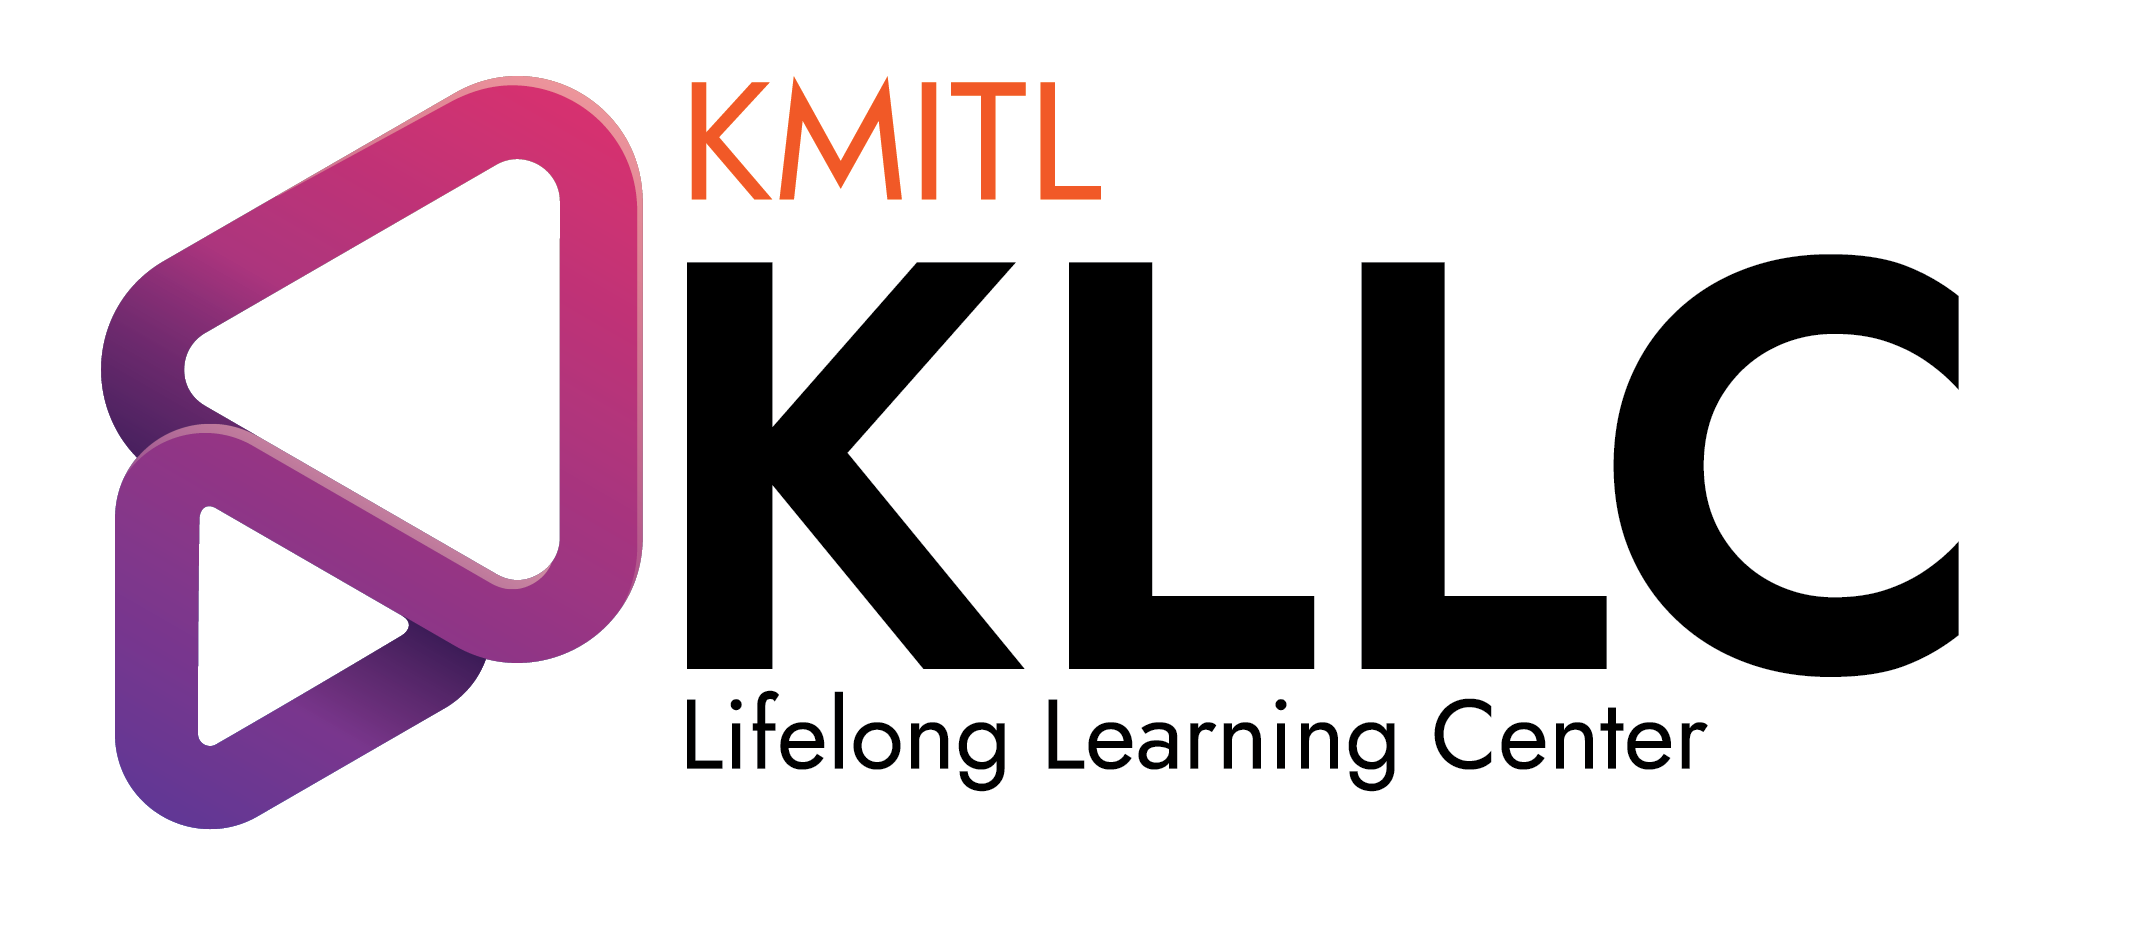 โปรแกรมจองห้อง สำนักการเรียนรู้ตลอดชีวิตพระจอมเกล้าเจ้าคุณทหารลาดกระบัง KMITL Lifelong Learning Center (ยกเลิกจองติดต่อ โทร. 02-329-8000 ต่อ 5087-5089)